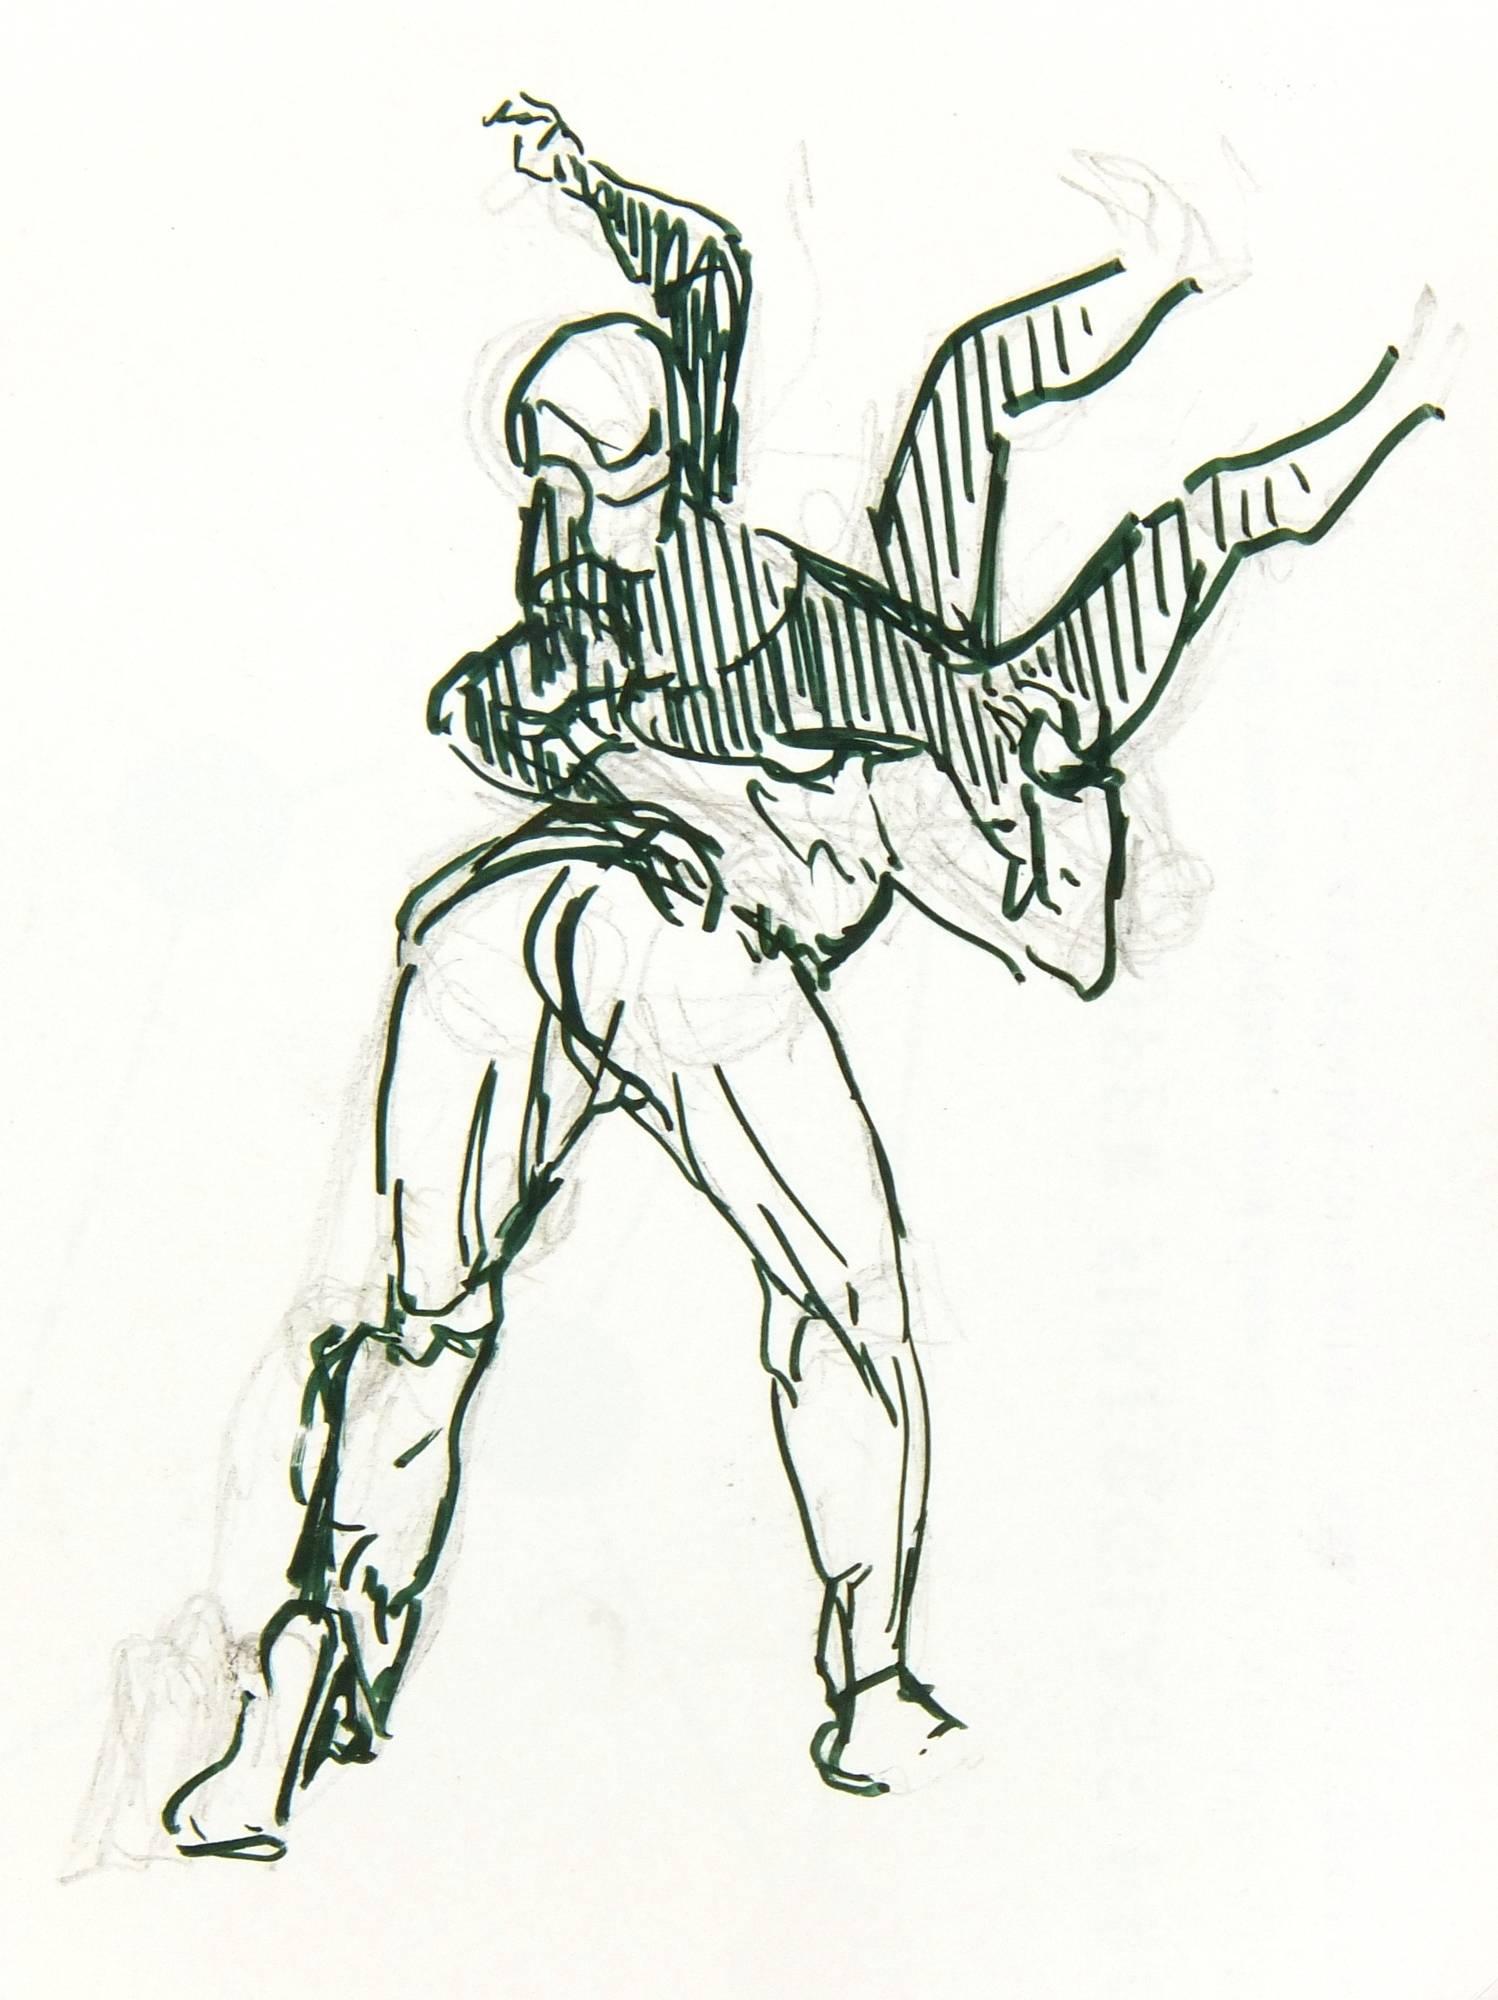 Werner Bell Figurative Art - Wrestling Sketch